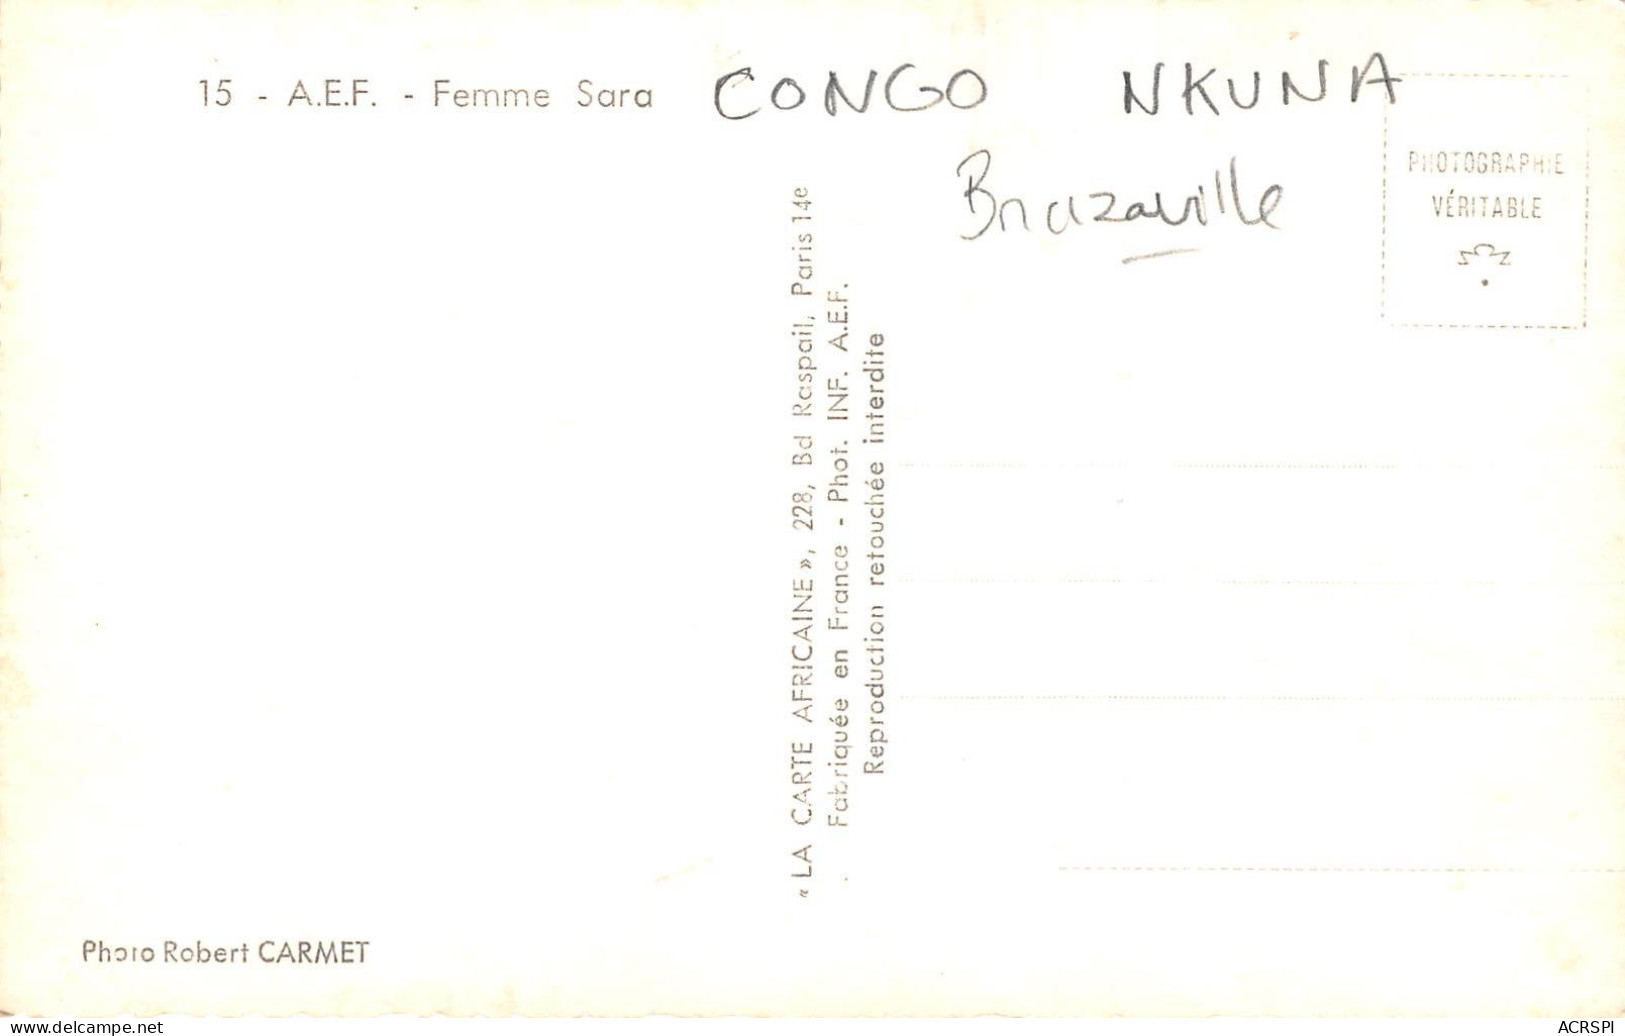 CONGO FRANCAIS  Brazzaville Nkuna Femme SARA AEF Carte Vierge  (scan Recto-verso) OO 0970 - French Congo